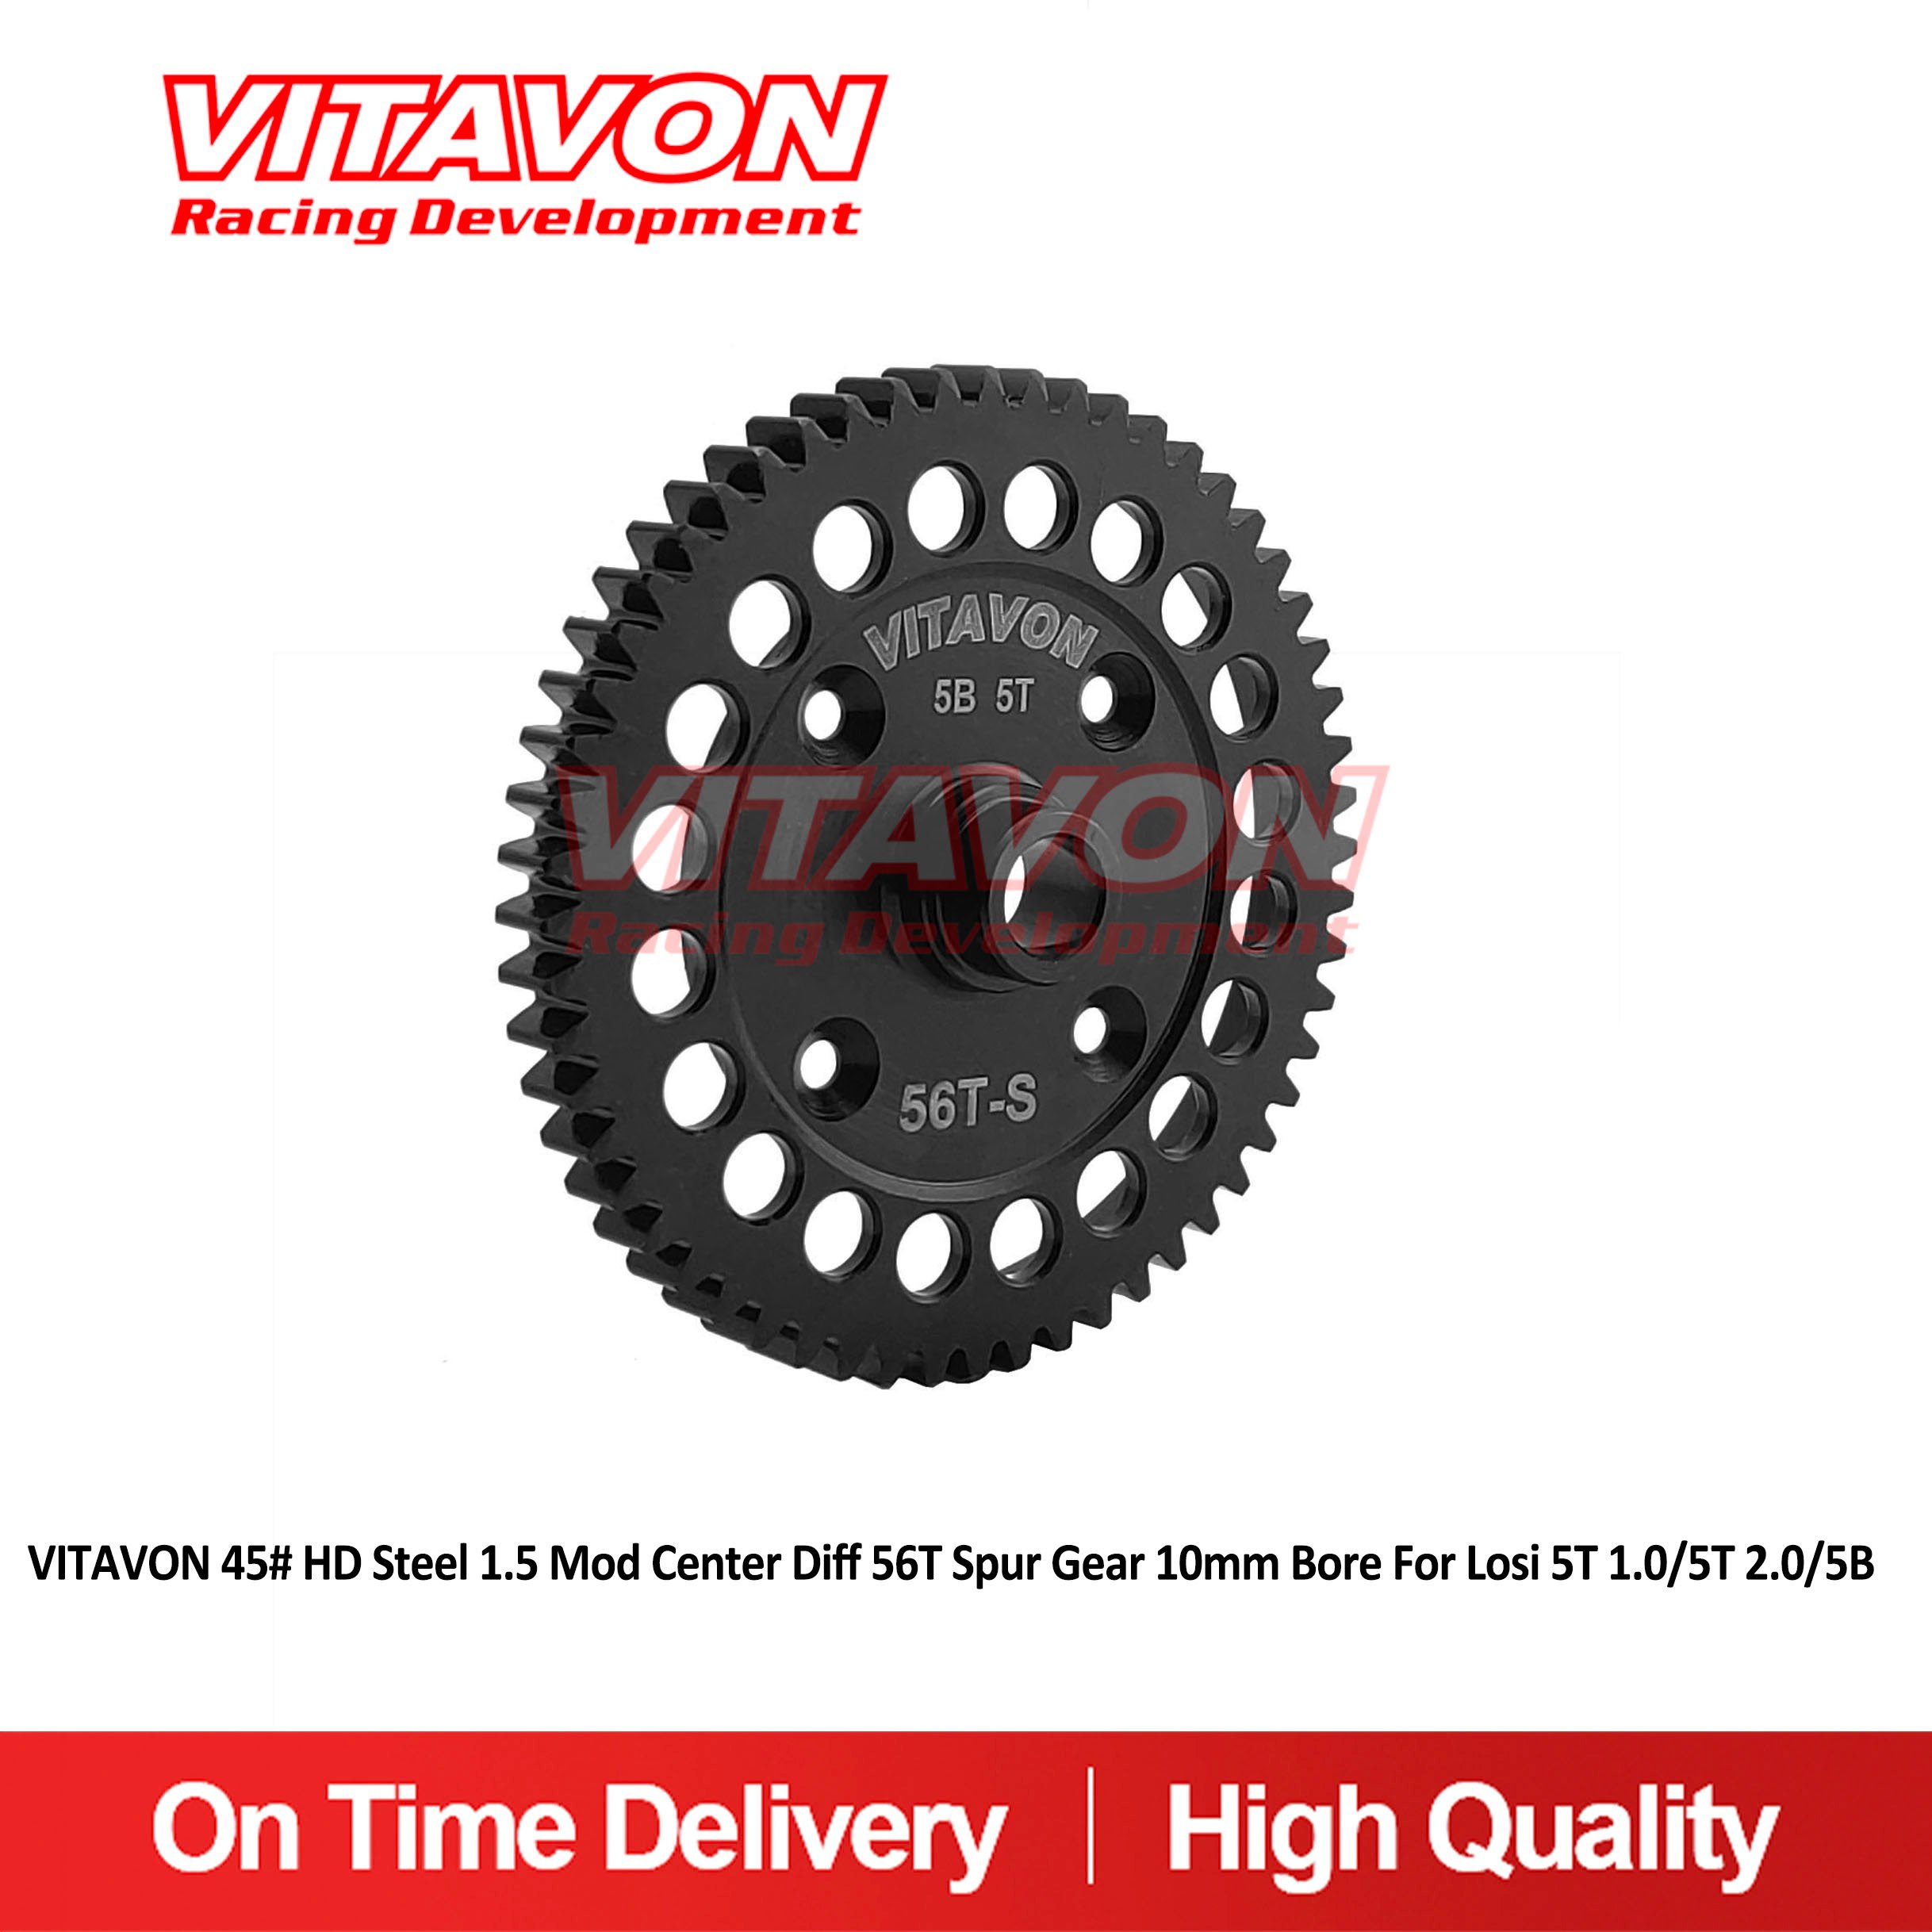 VITAVON HD 56T Center Diff Spur Gear for Losi 5T 5B